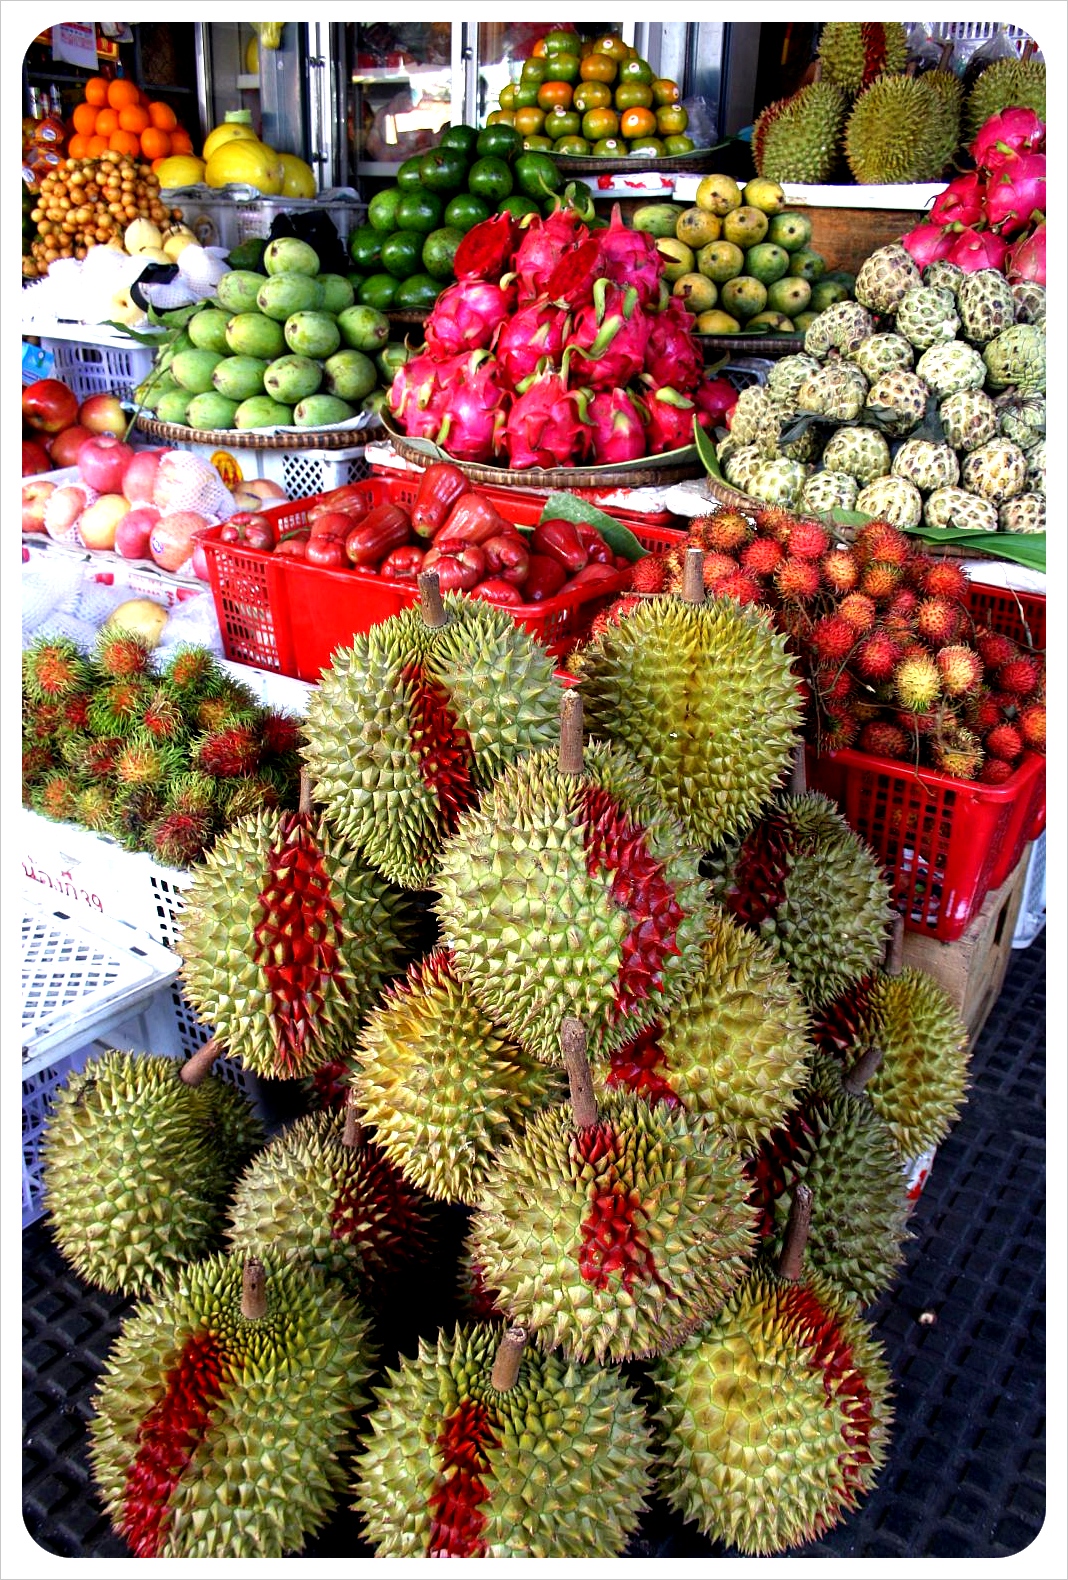 phnom penh central market durians